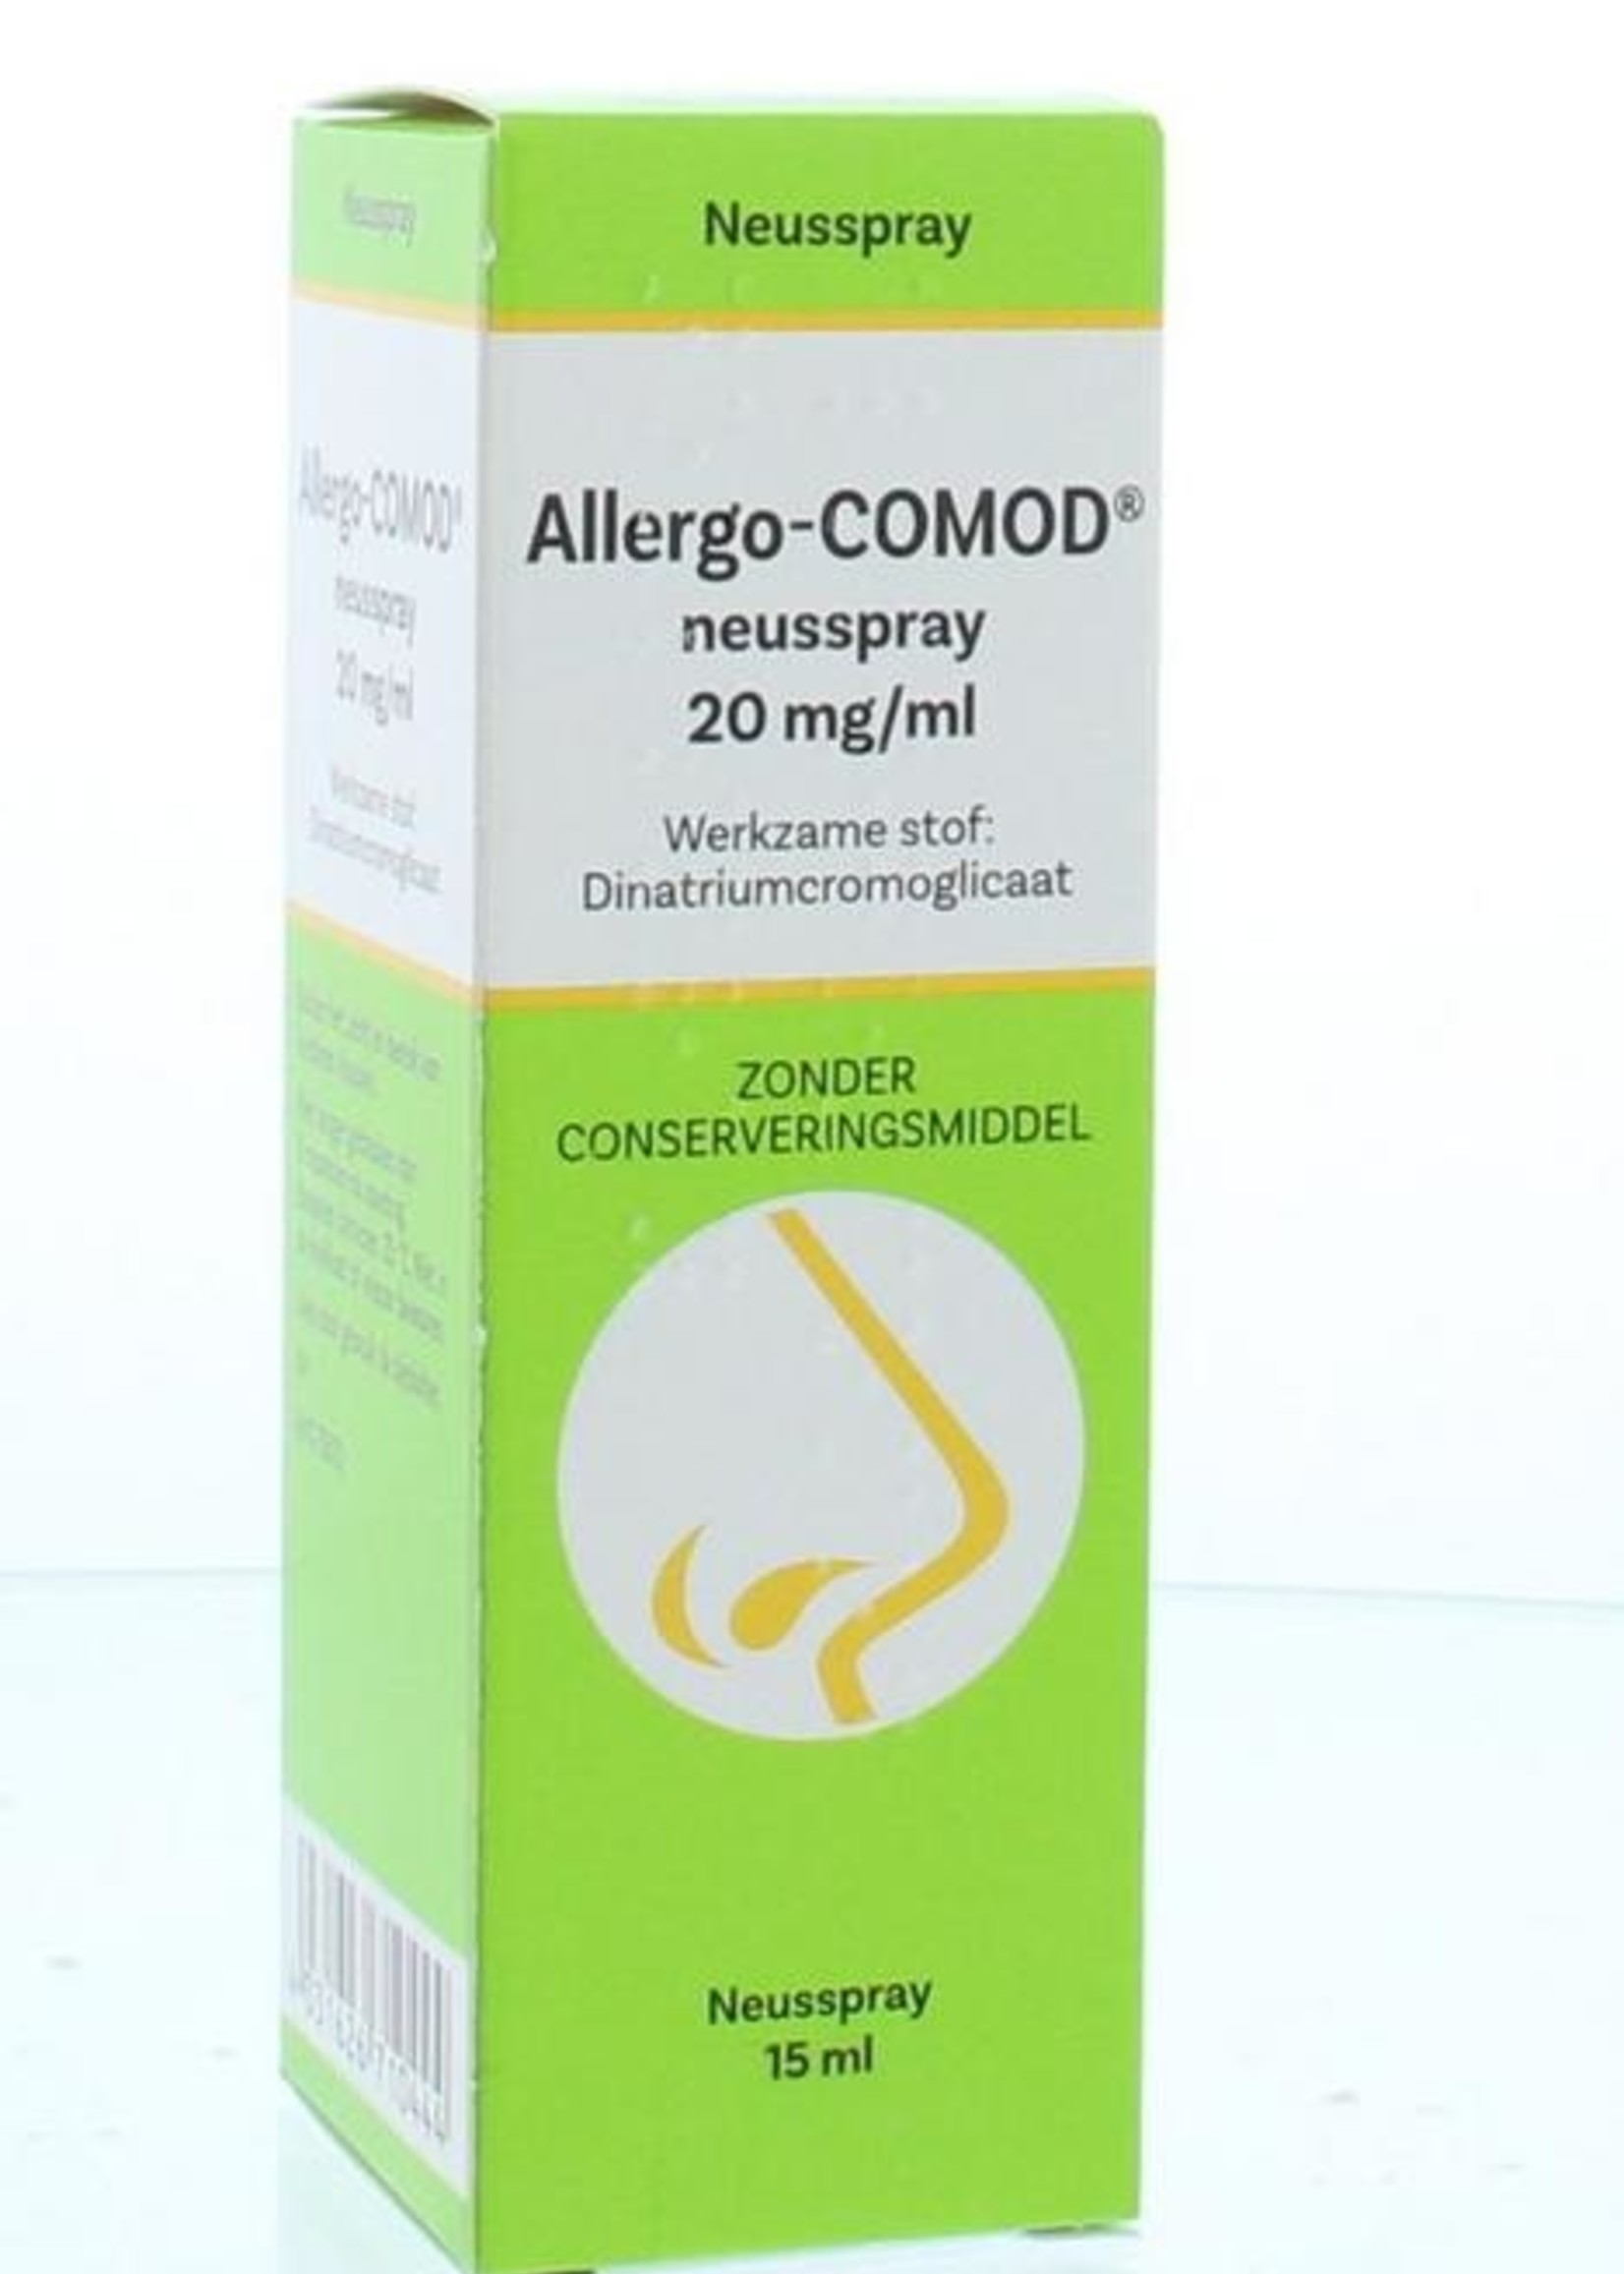 Usapharm Allergo-comod neusspray UAD 15ml